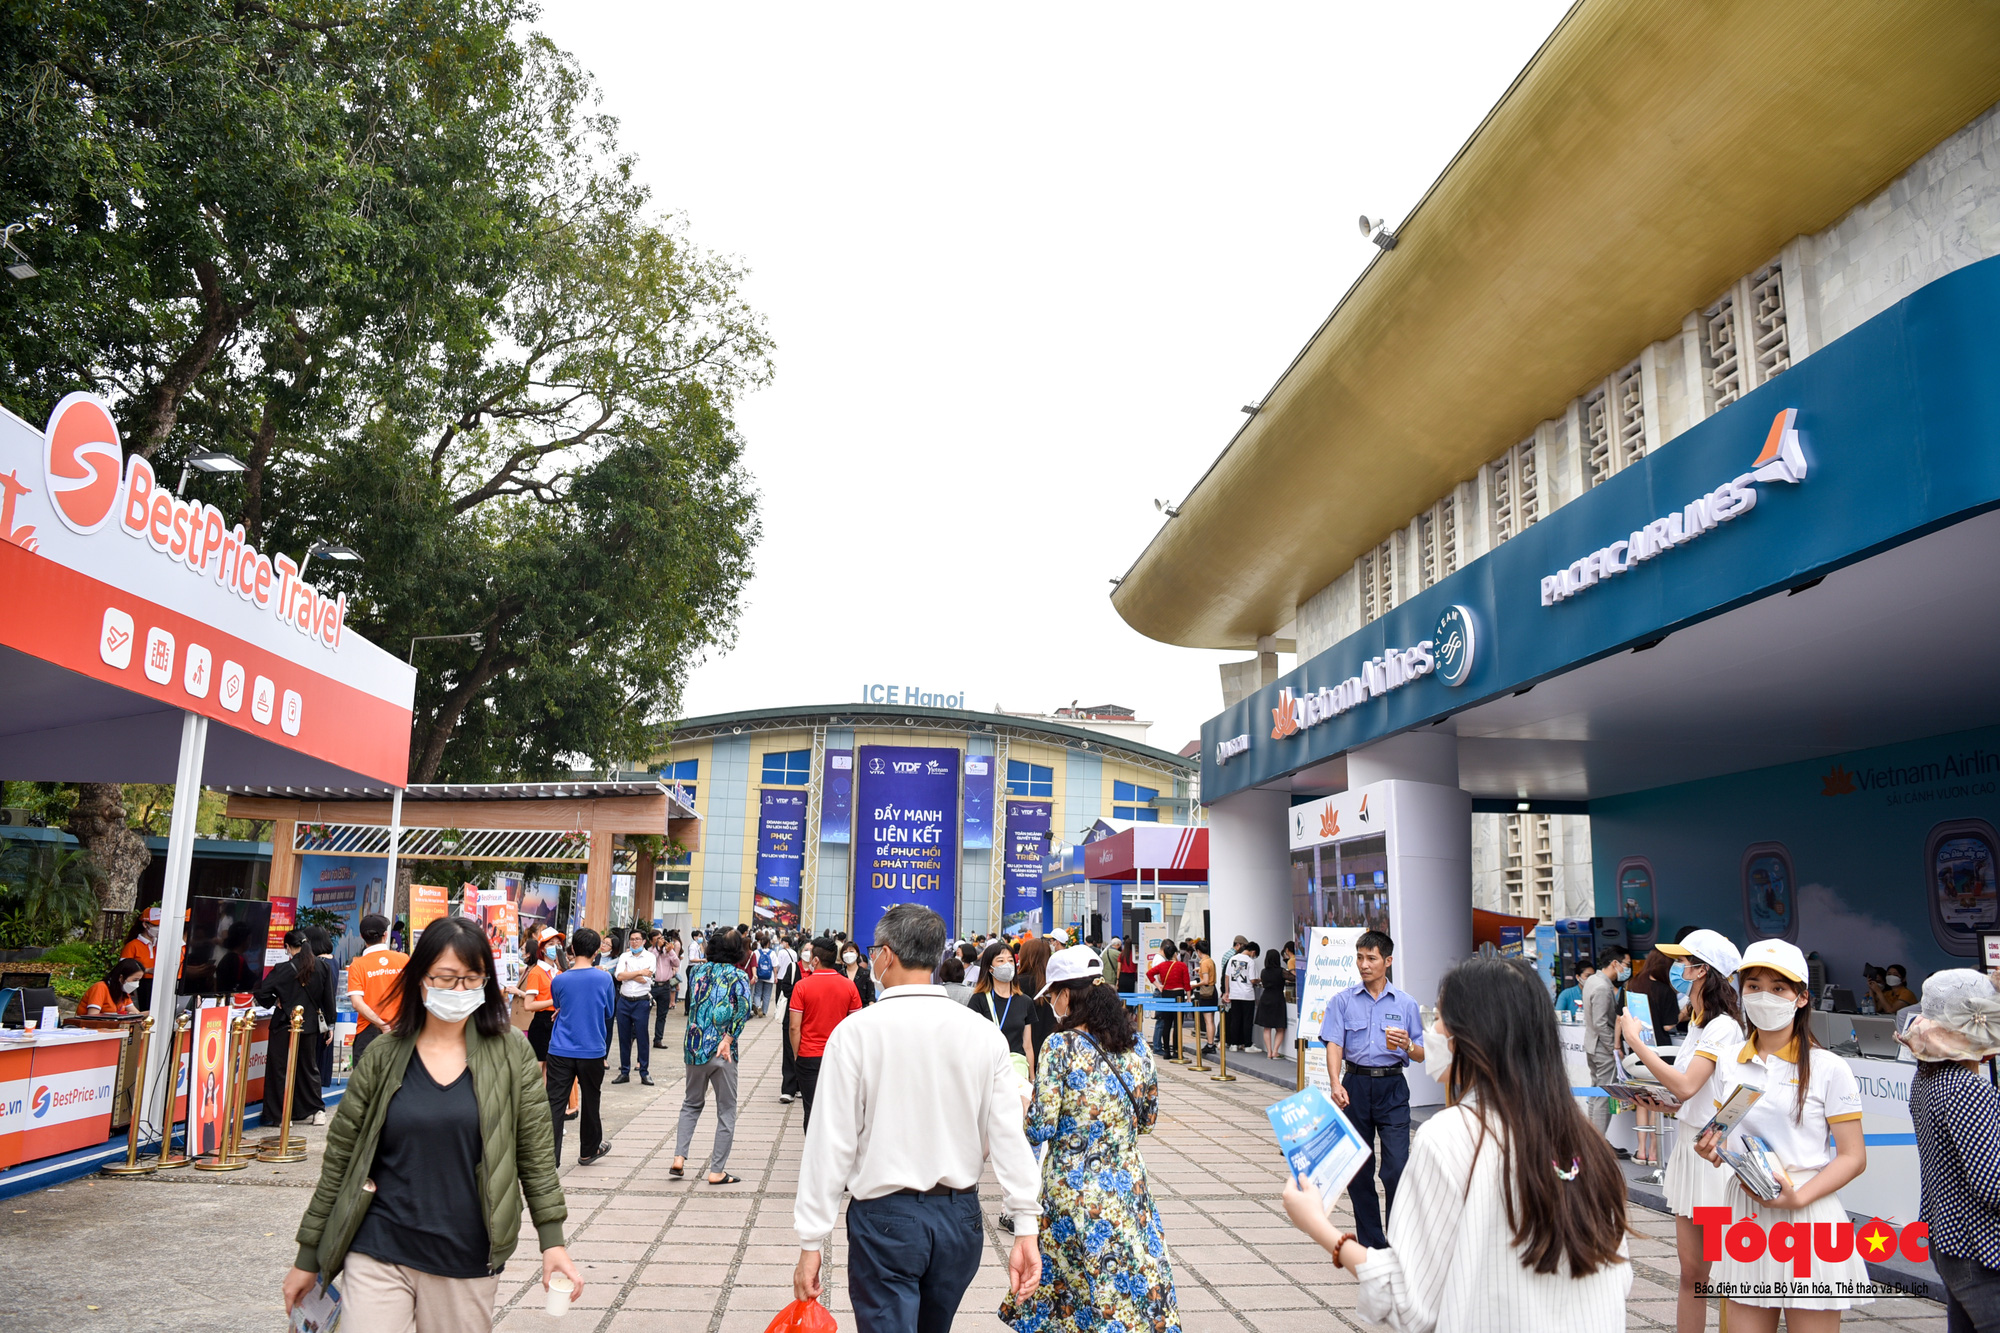 Hà Nội: Người dân thủ đô hào hứng săn vé giá rẻ tại hội chợ Du lịch quốc tế Việt Nam 2022 - Ảnh 1.